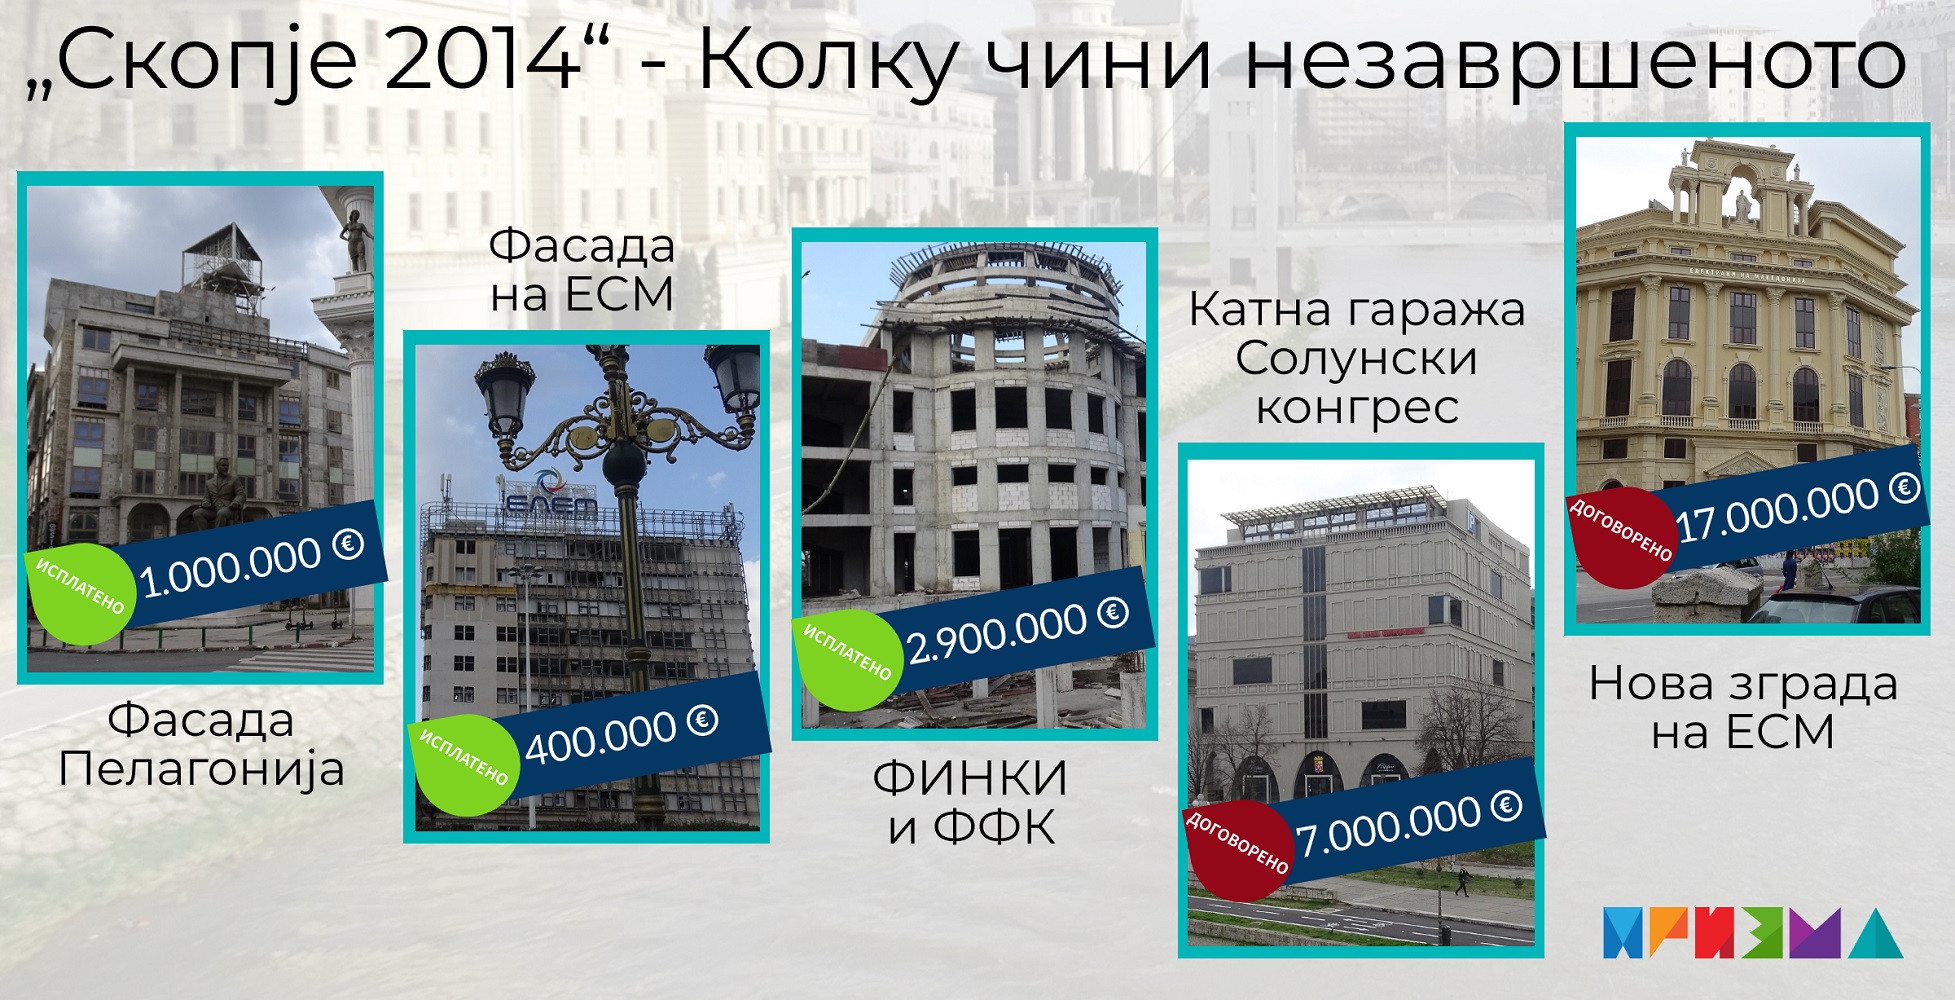 Графика, трошоци за Скопје 2014